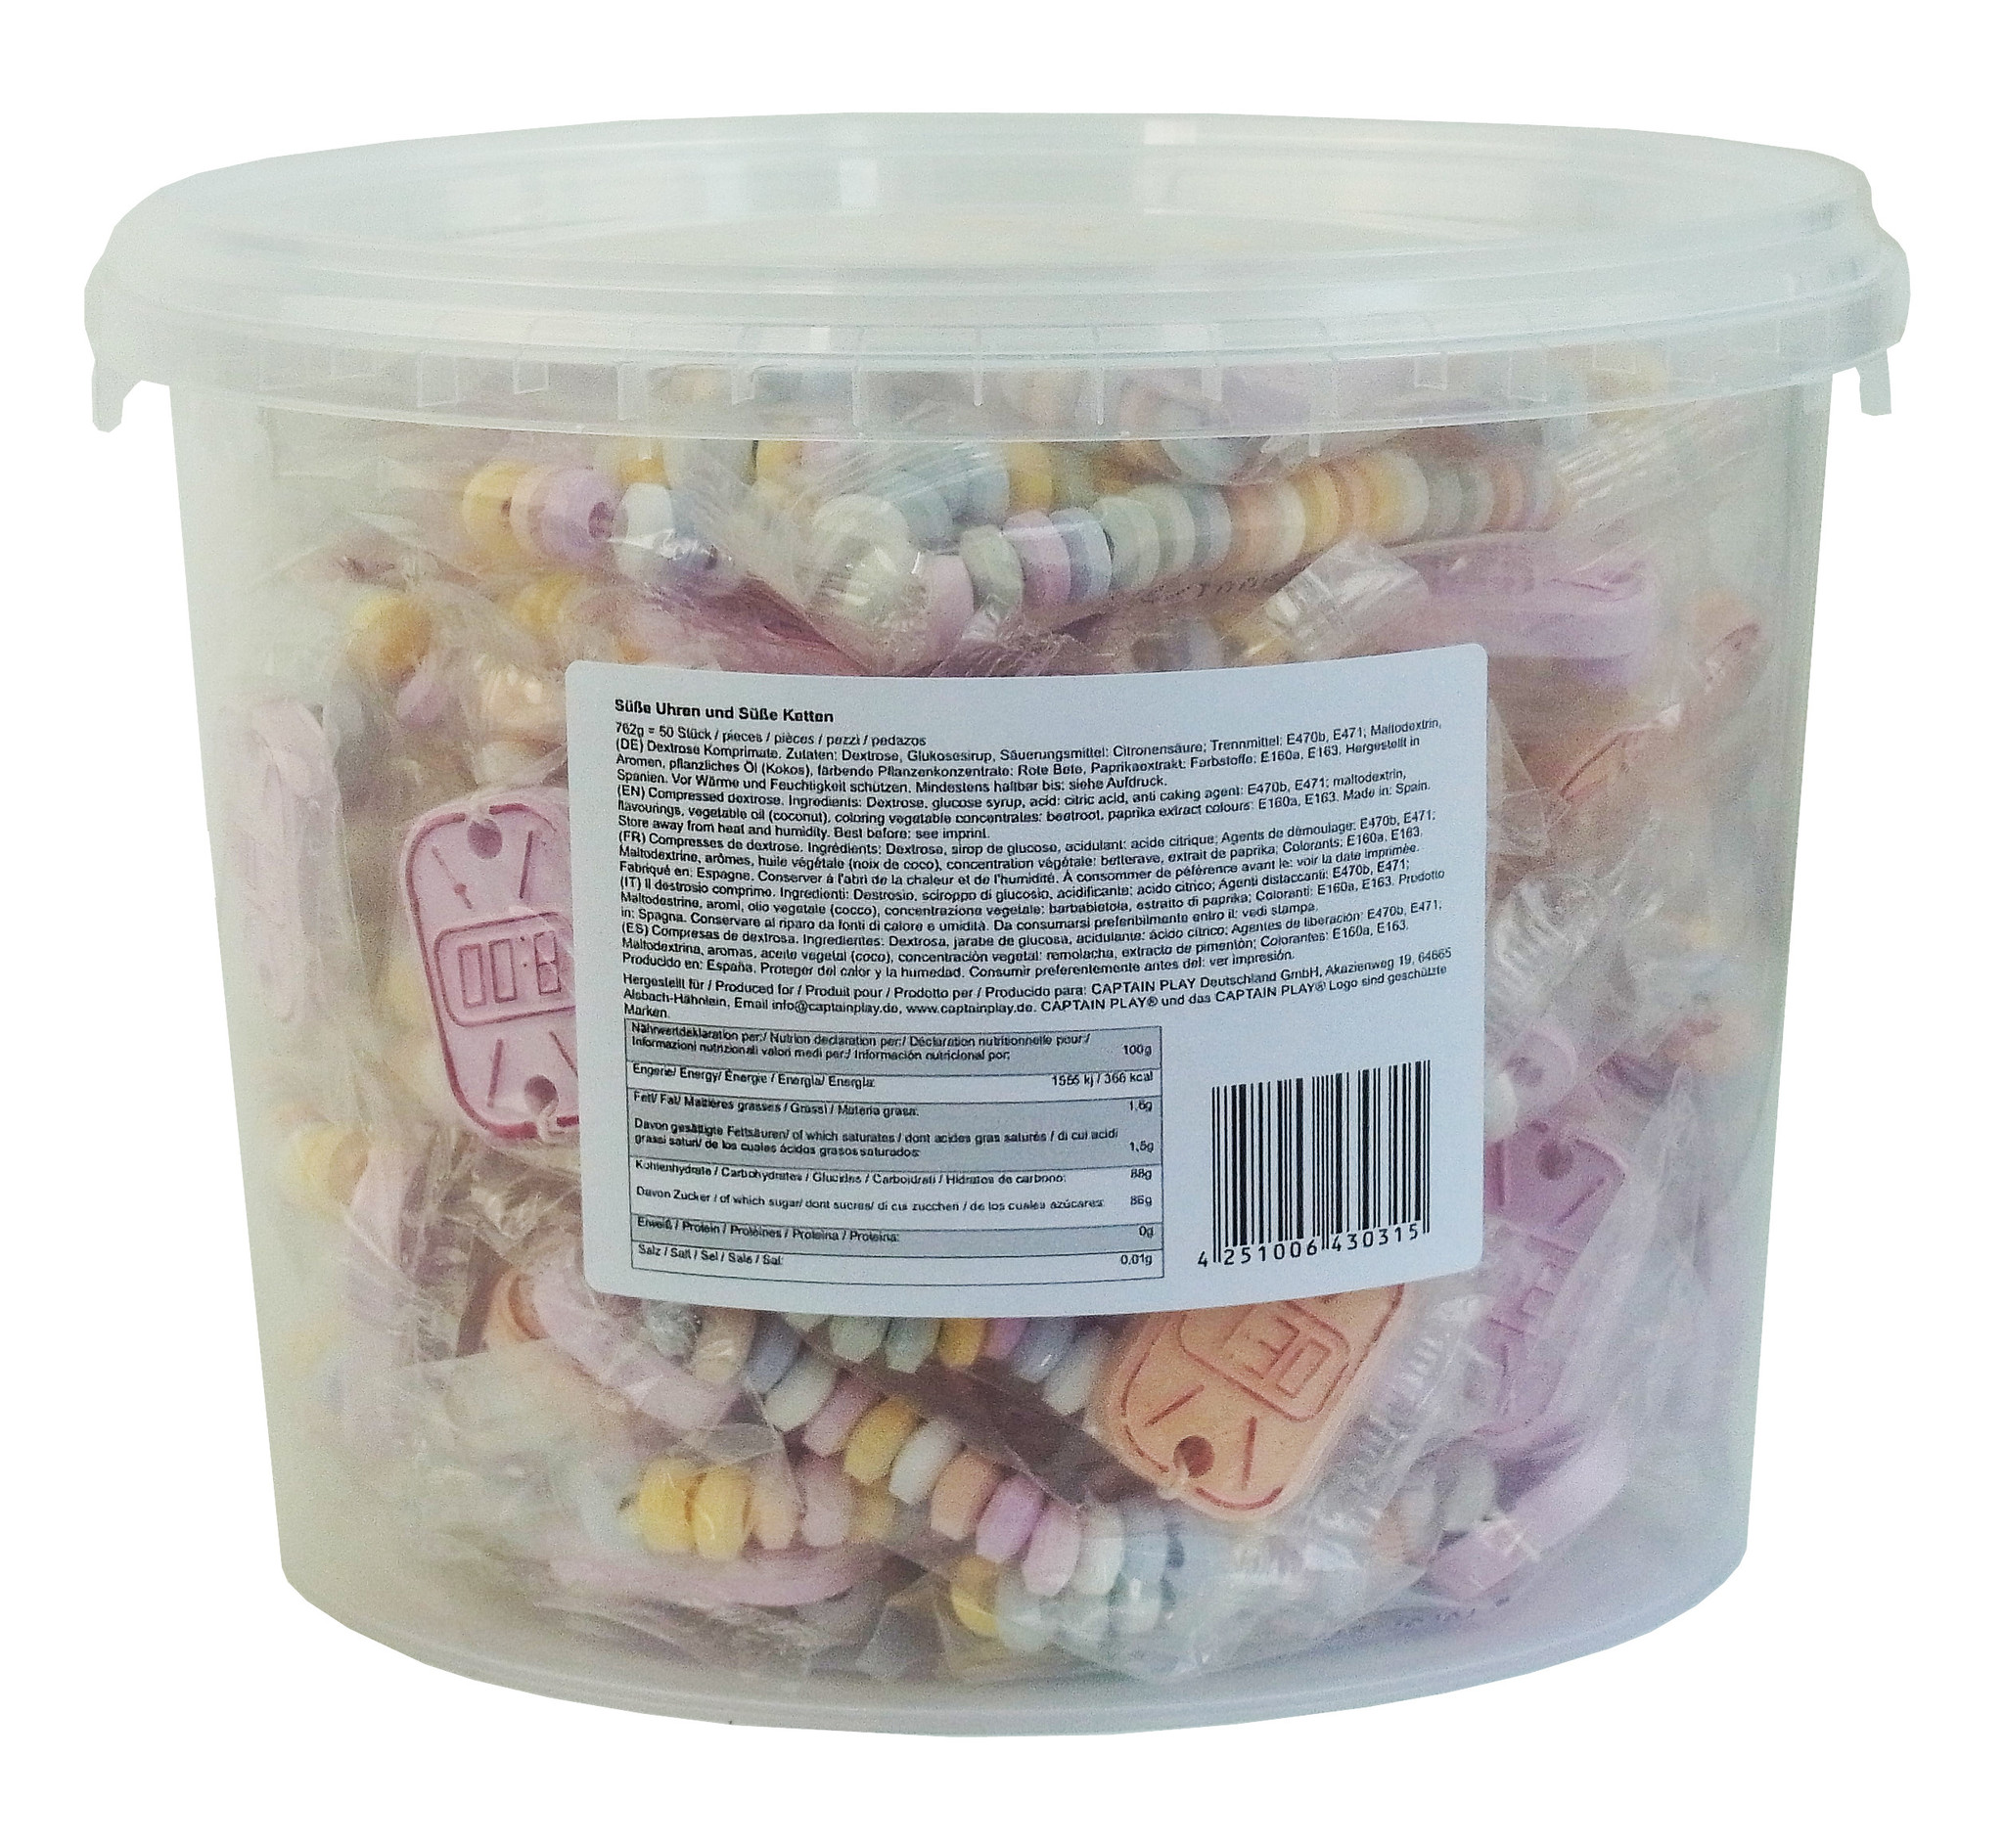 CAPTAIN PLAY Retro Süßigkeiten Box mit Süße Uhren und Süße Ketten Mix, 50 Stück in Einzelverpackung, 1er Pack (1 x 762g)